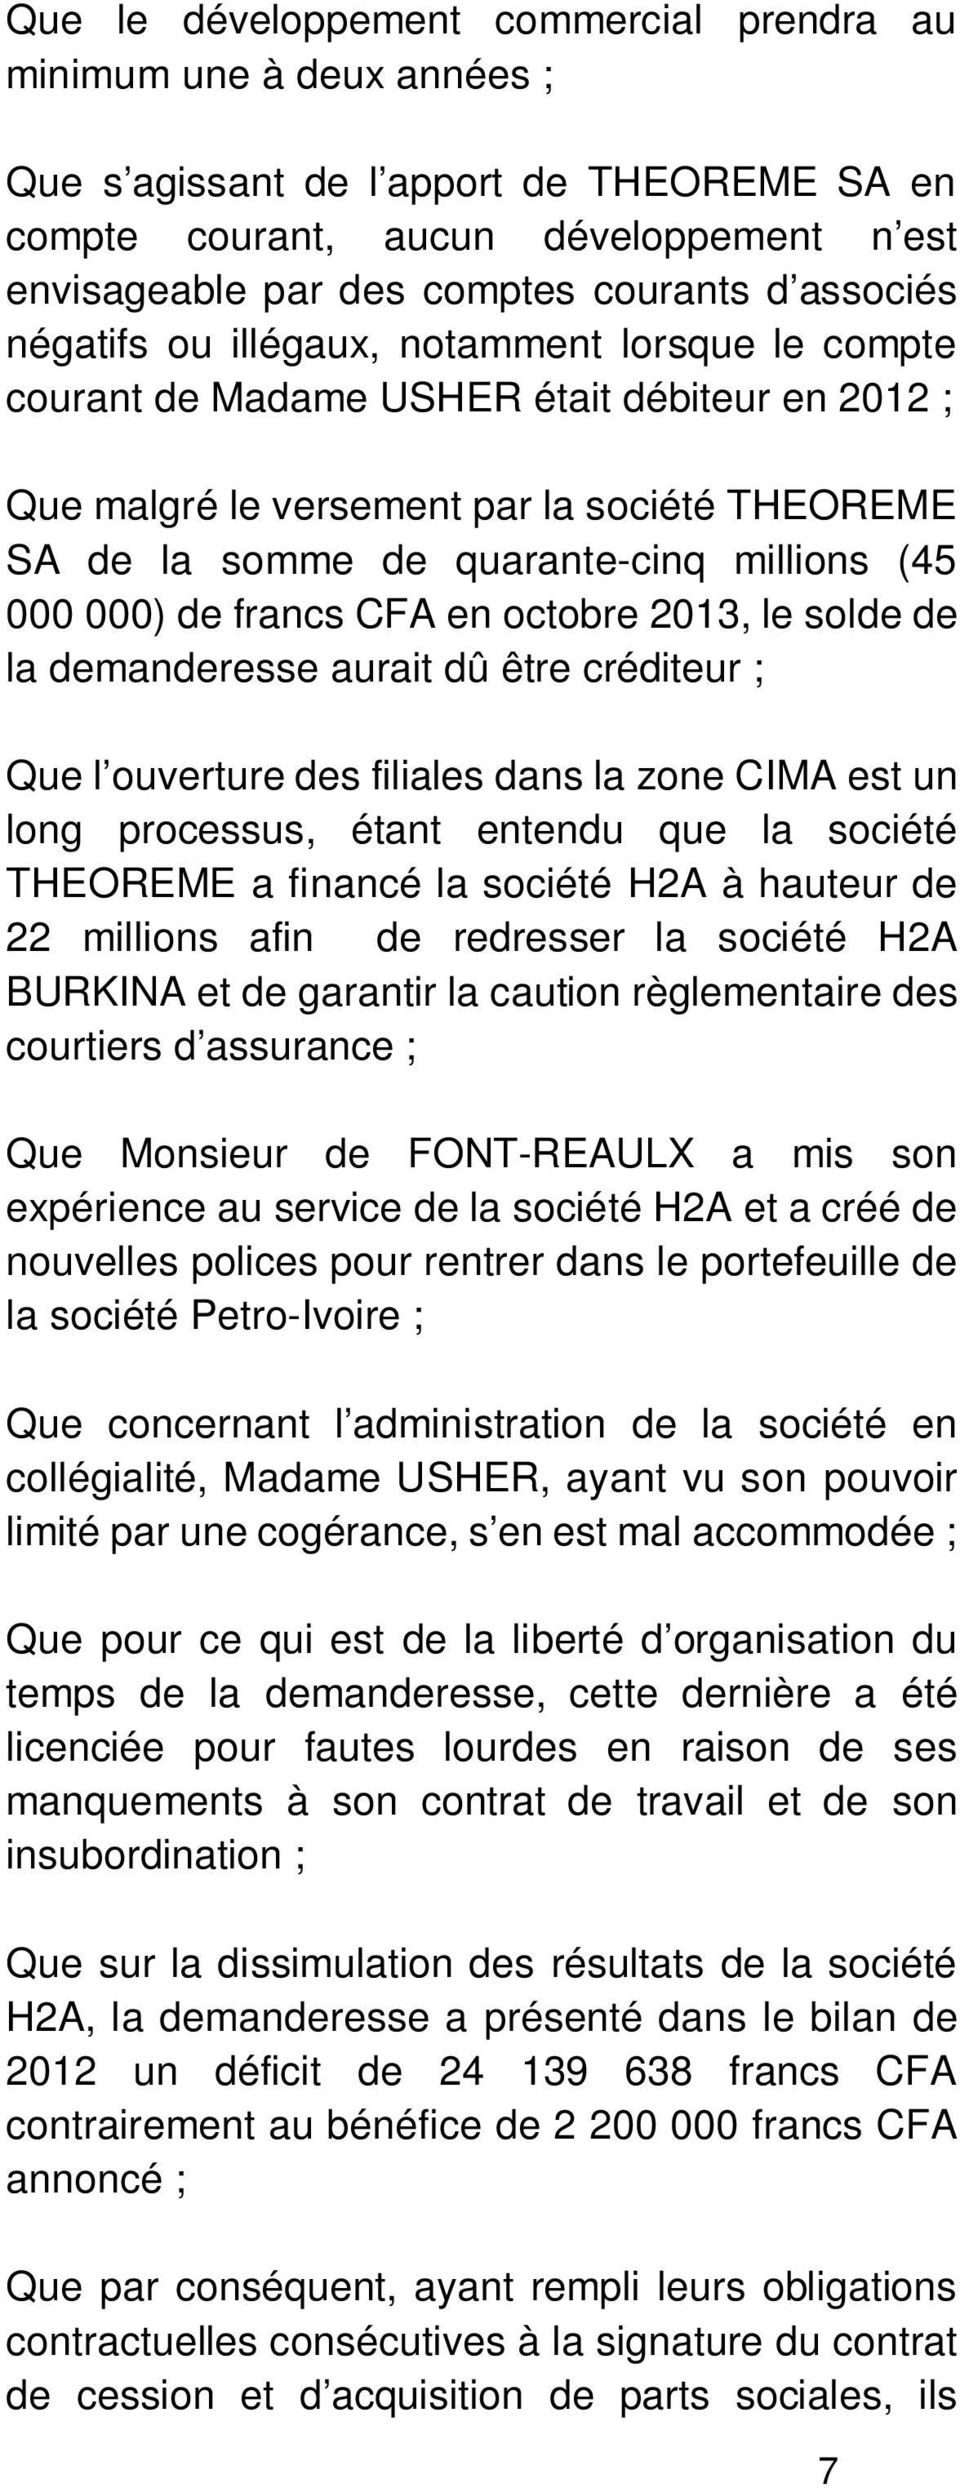 (45 000 000) de francs CFA en octobre 2013, le solde de la demanderesse aurait dû être créditeur ; Que l ouverture des filiales dans la zone CIMA est un long processus, étant entendu que la société